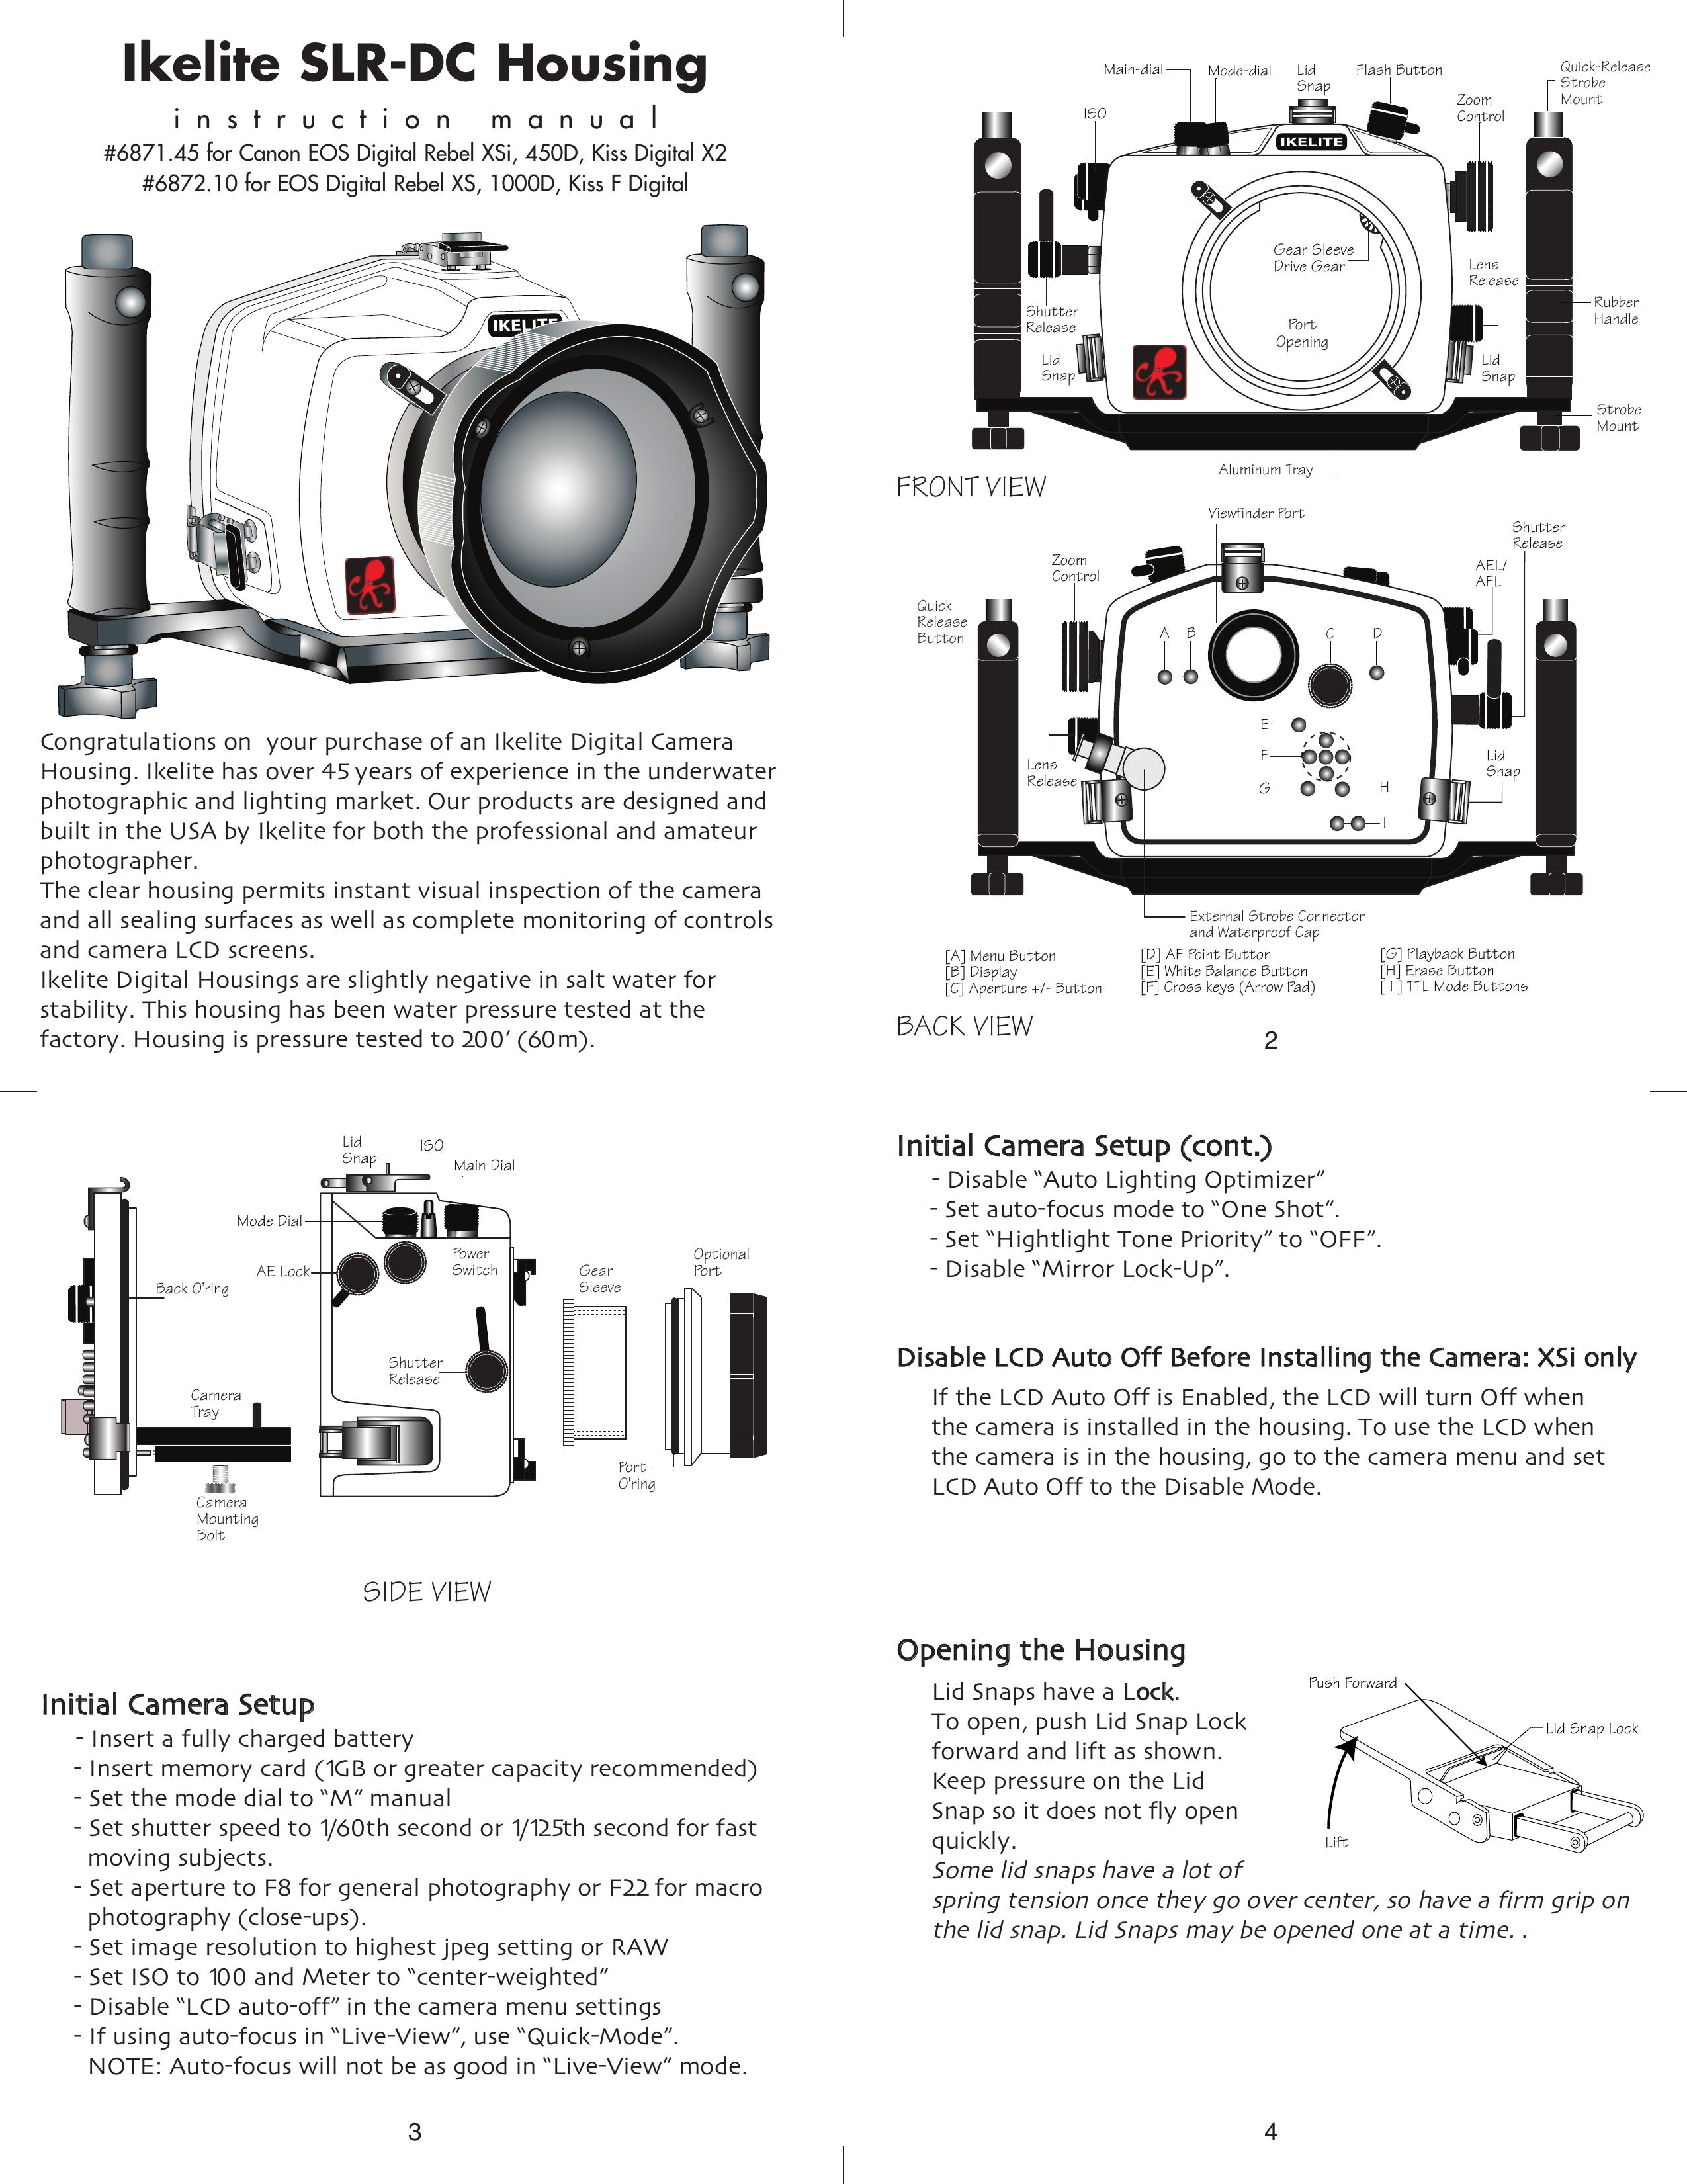 Ikelite 6872.10 Digital Camera User Manual